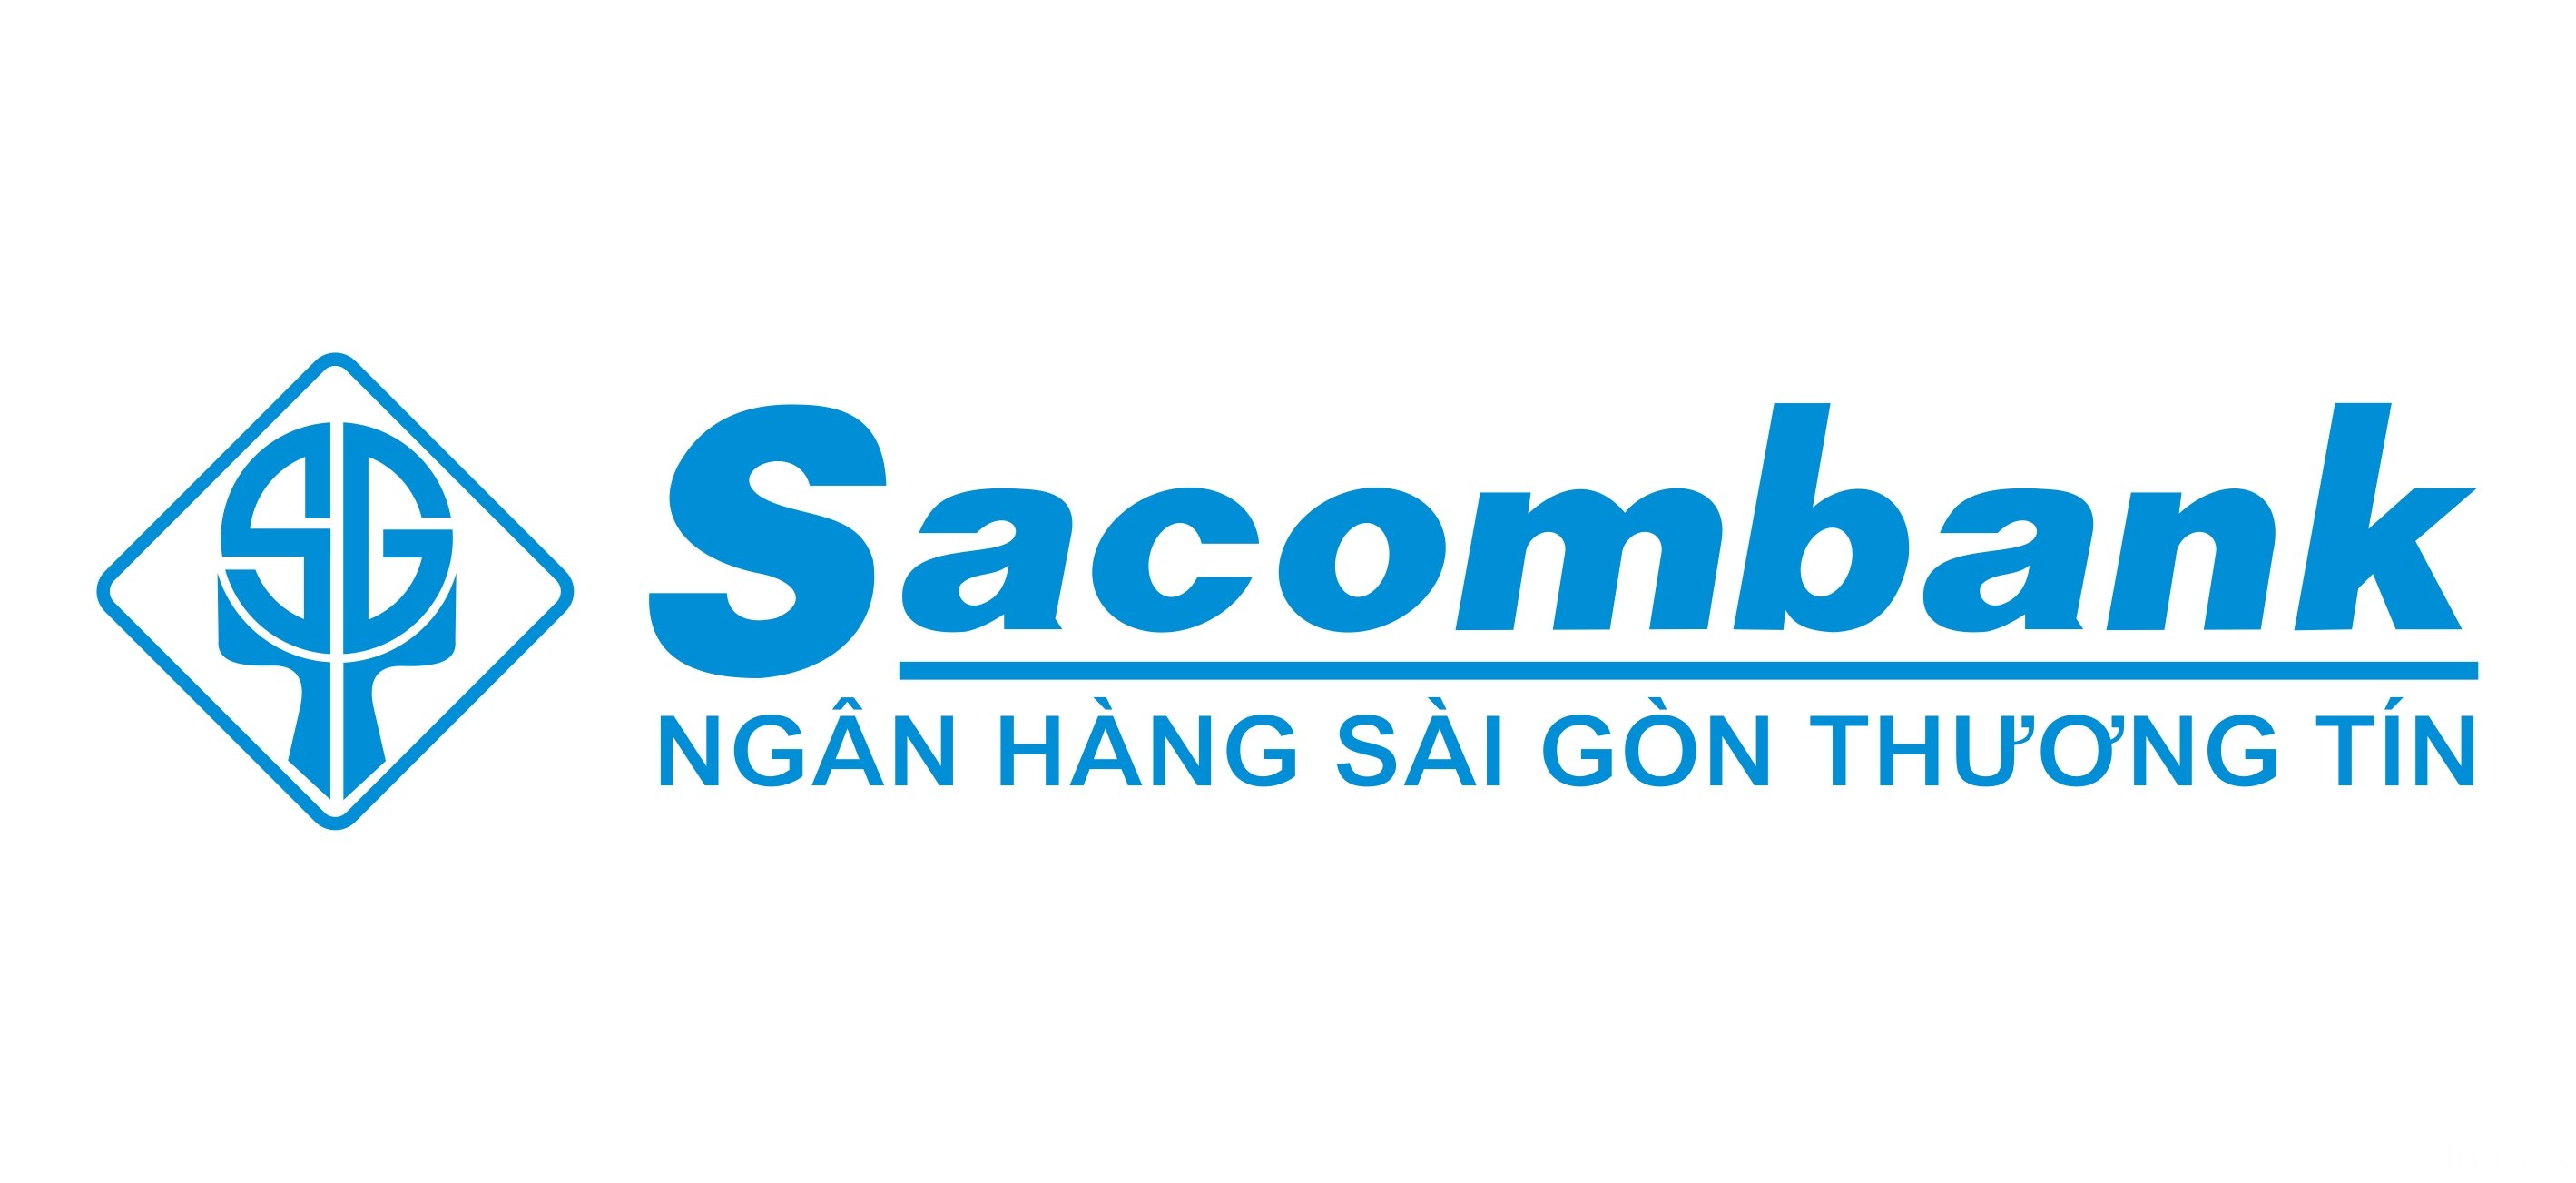 Sacombank | Ngân hàng thương mại cổ phần Sài Gòn Thương Tín